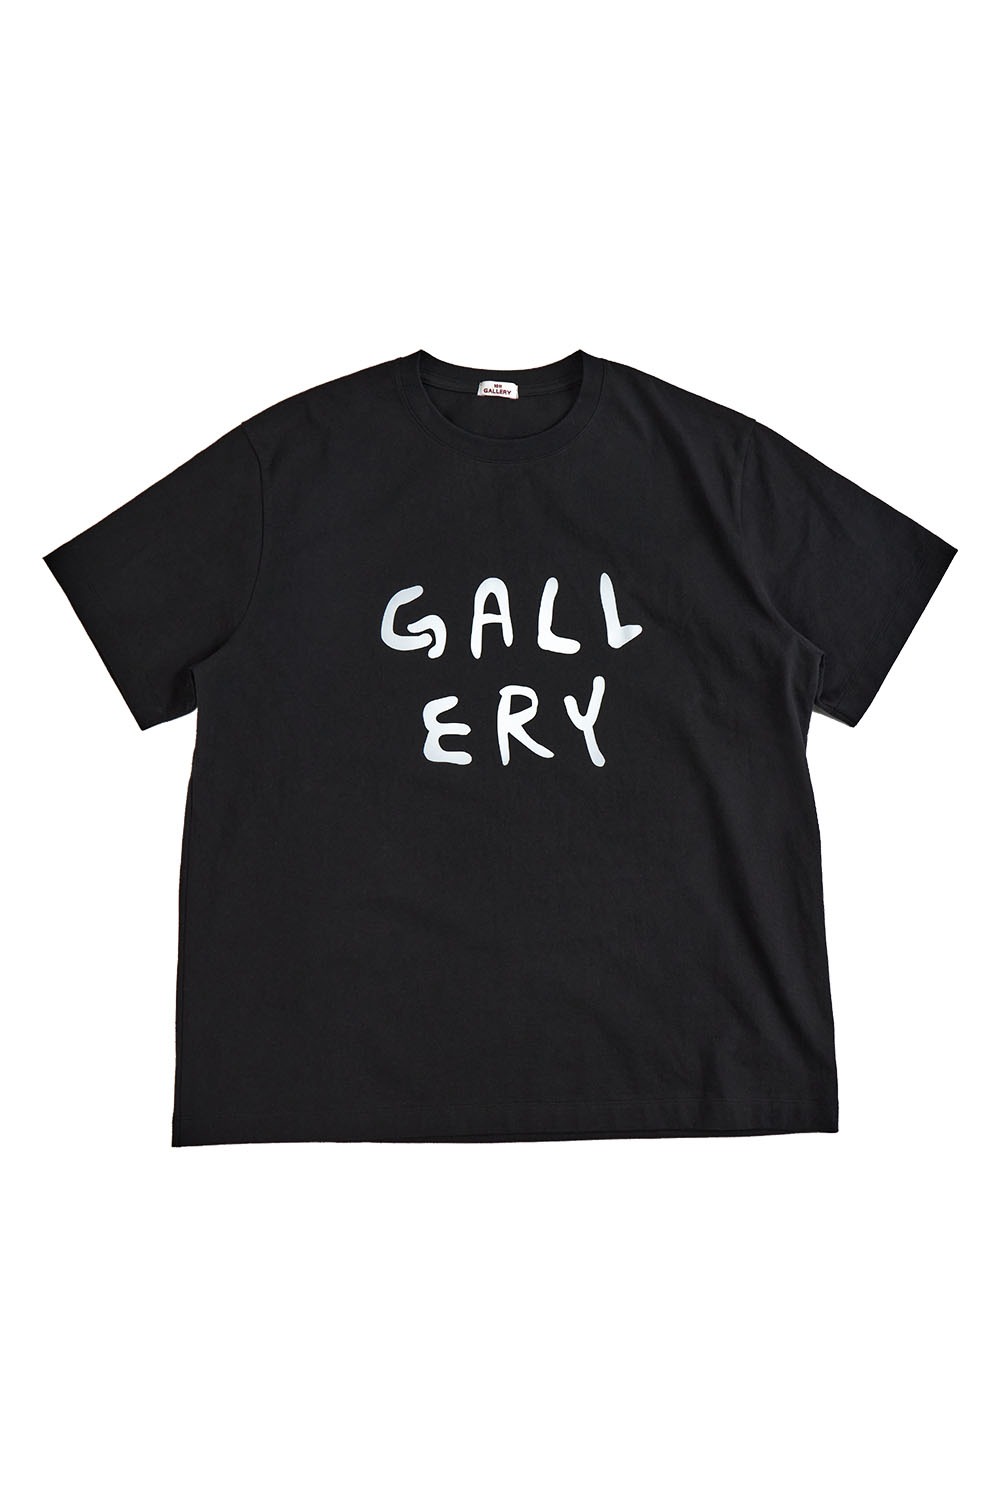 Gallery Logo T-shirt (Restock)